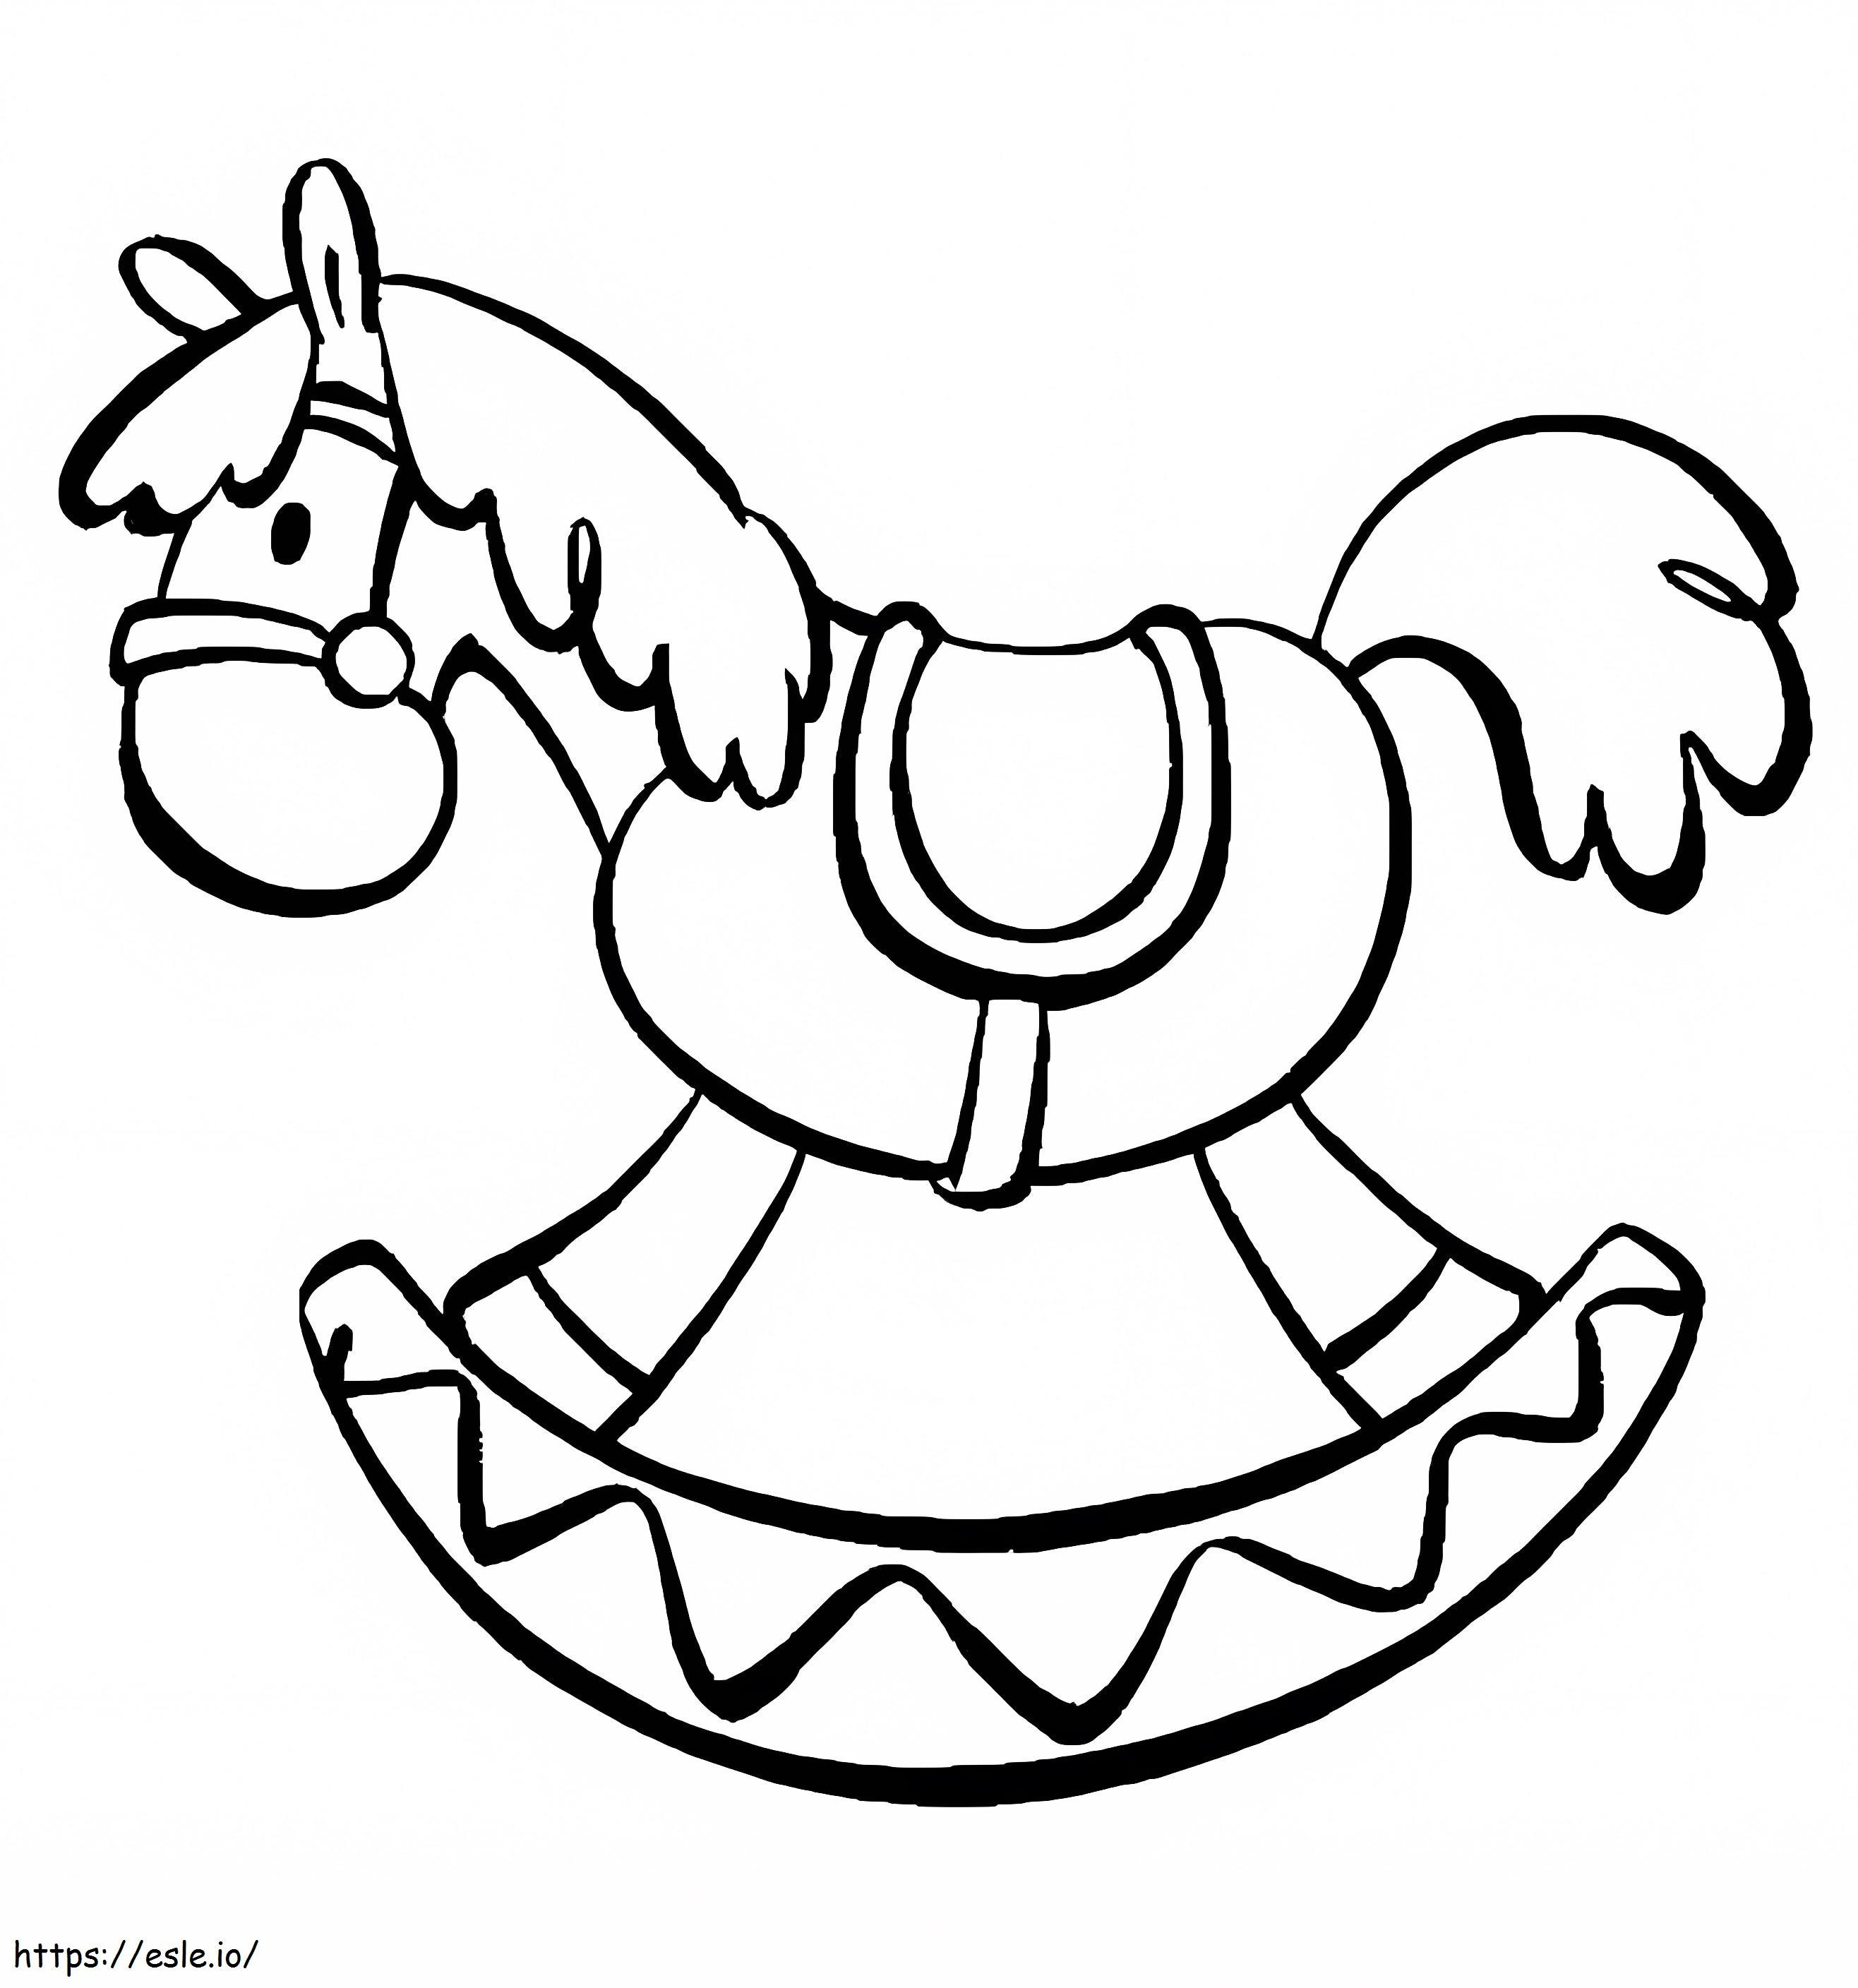 Cavalo de Balanço Engraçado para colorir